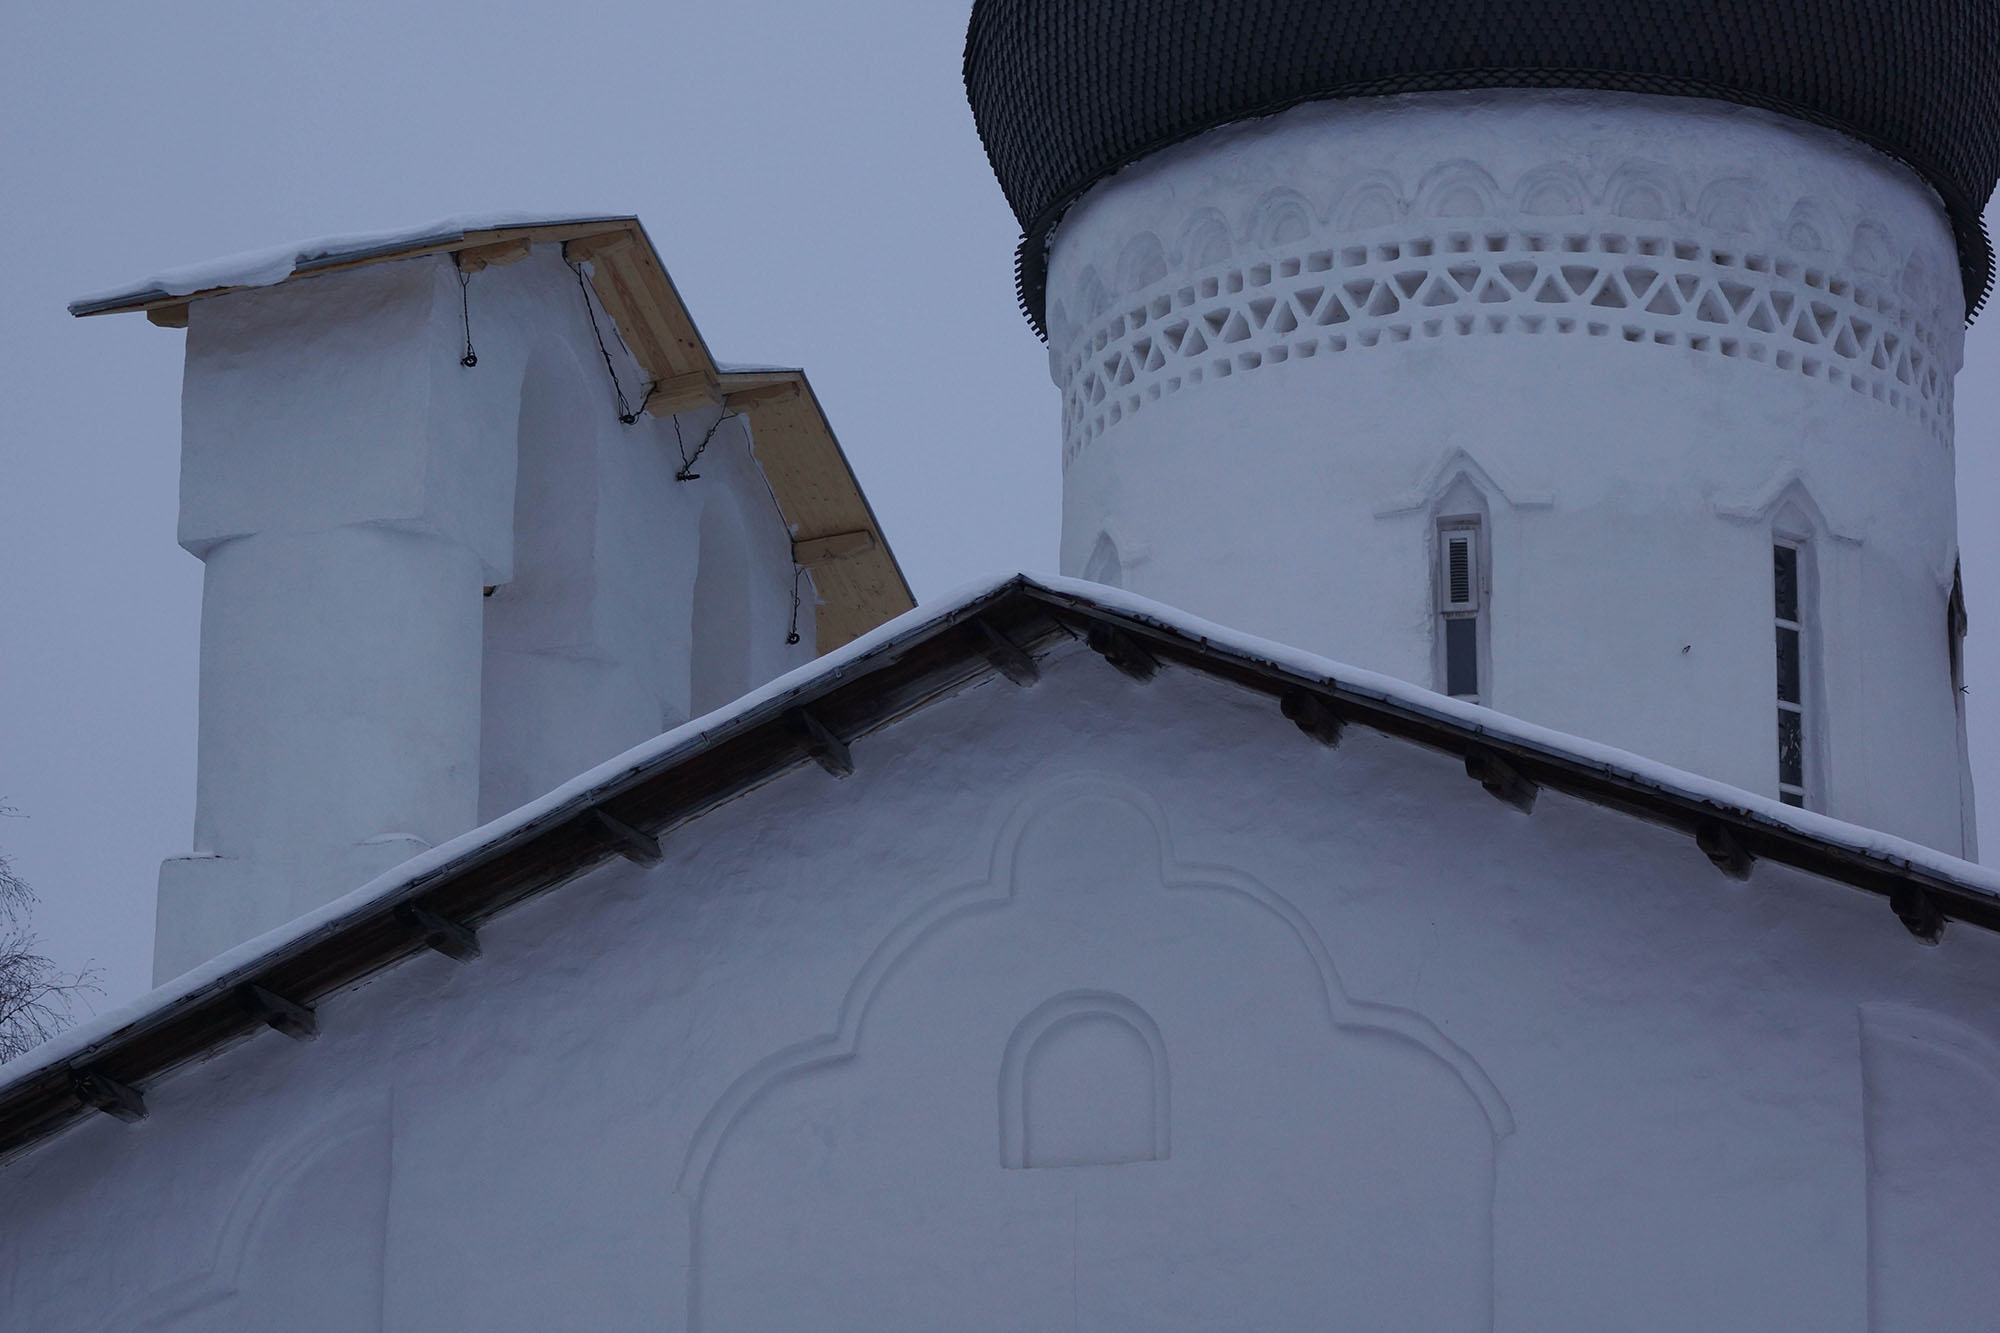 Псков. Церковь Николы на Усохе. 1536 год.